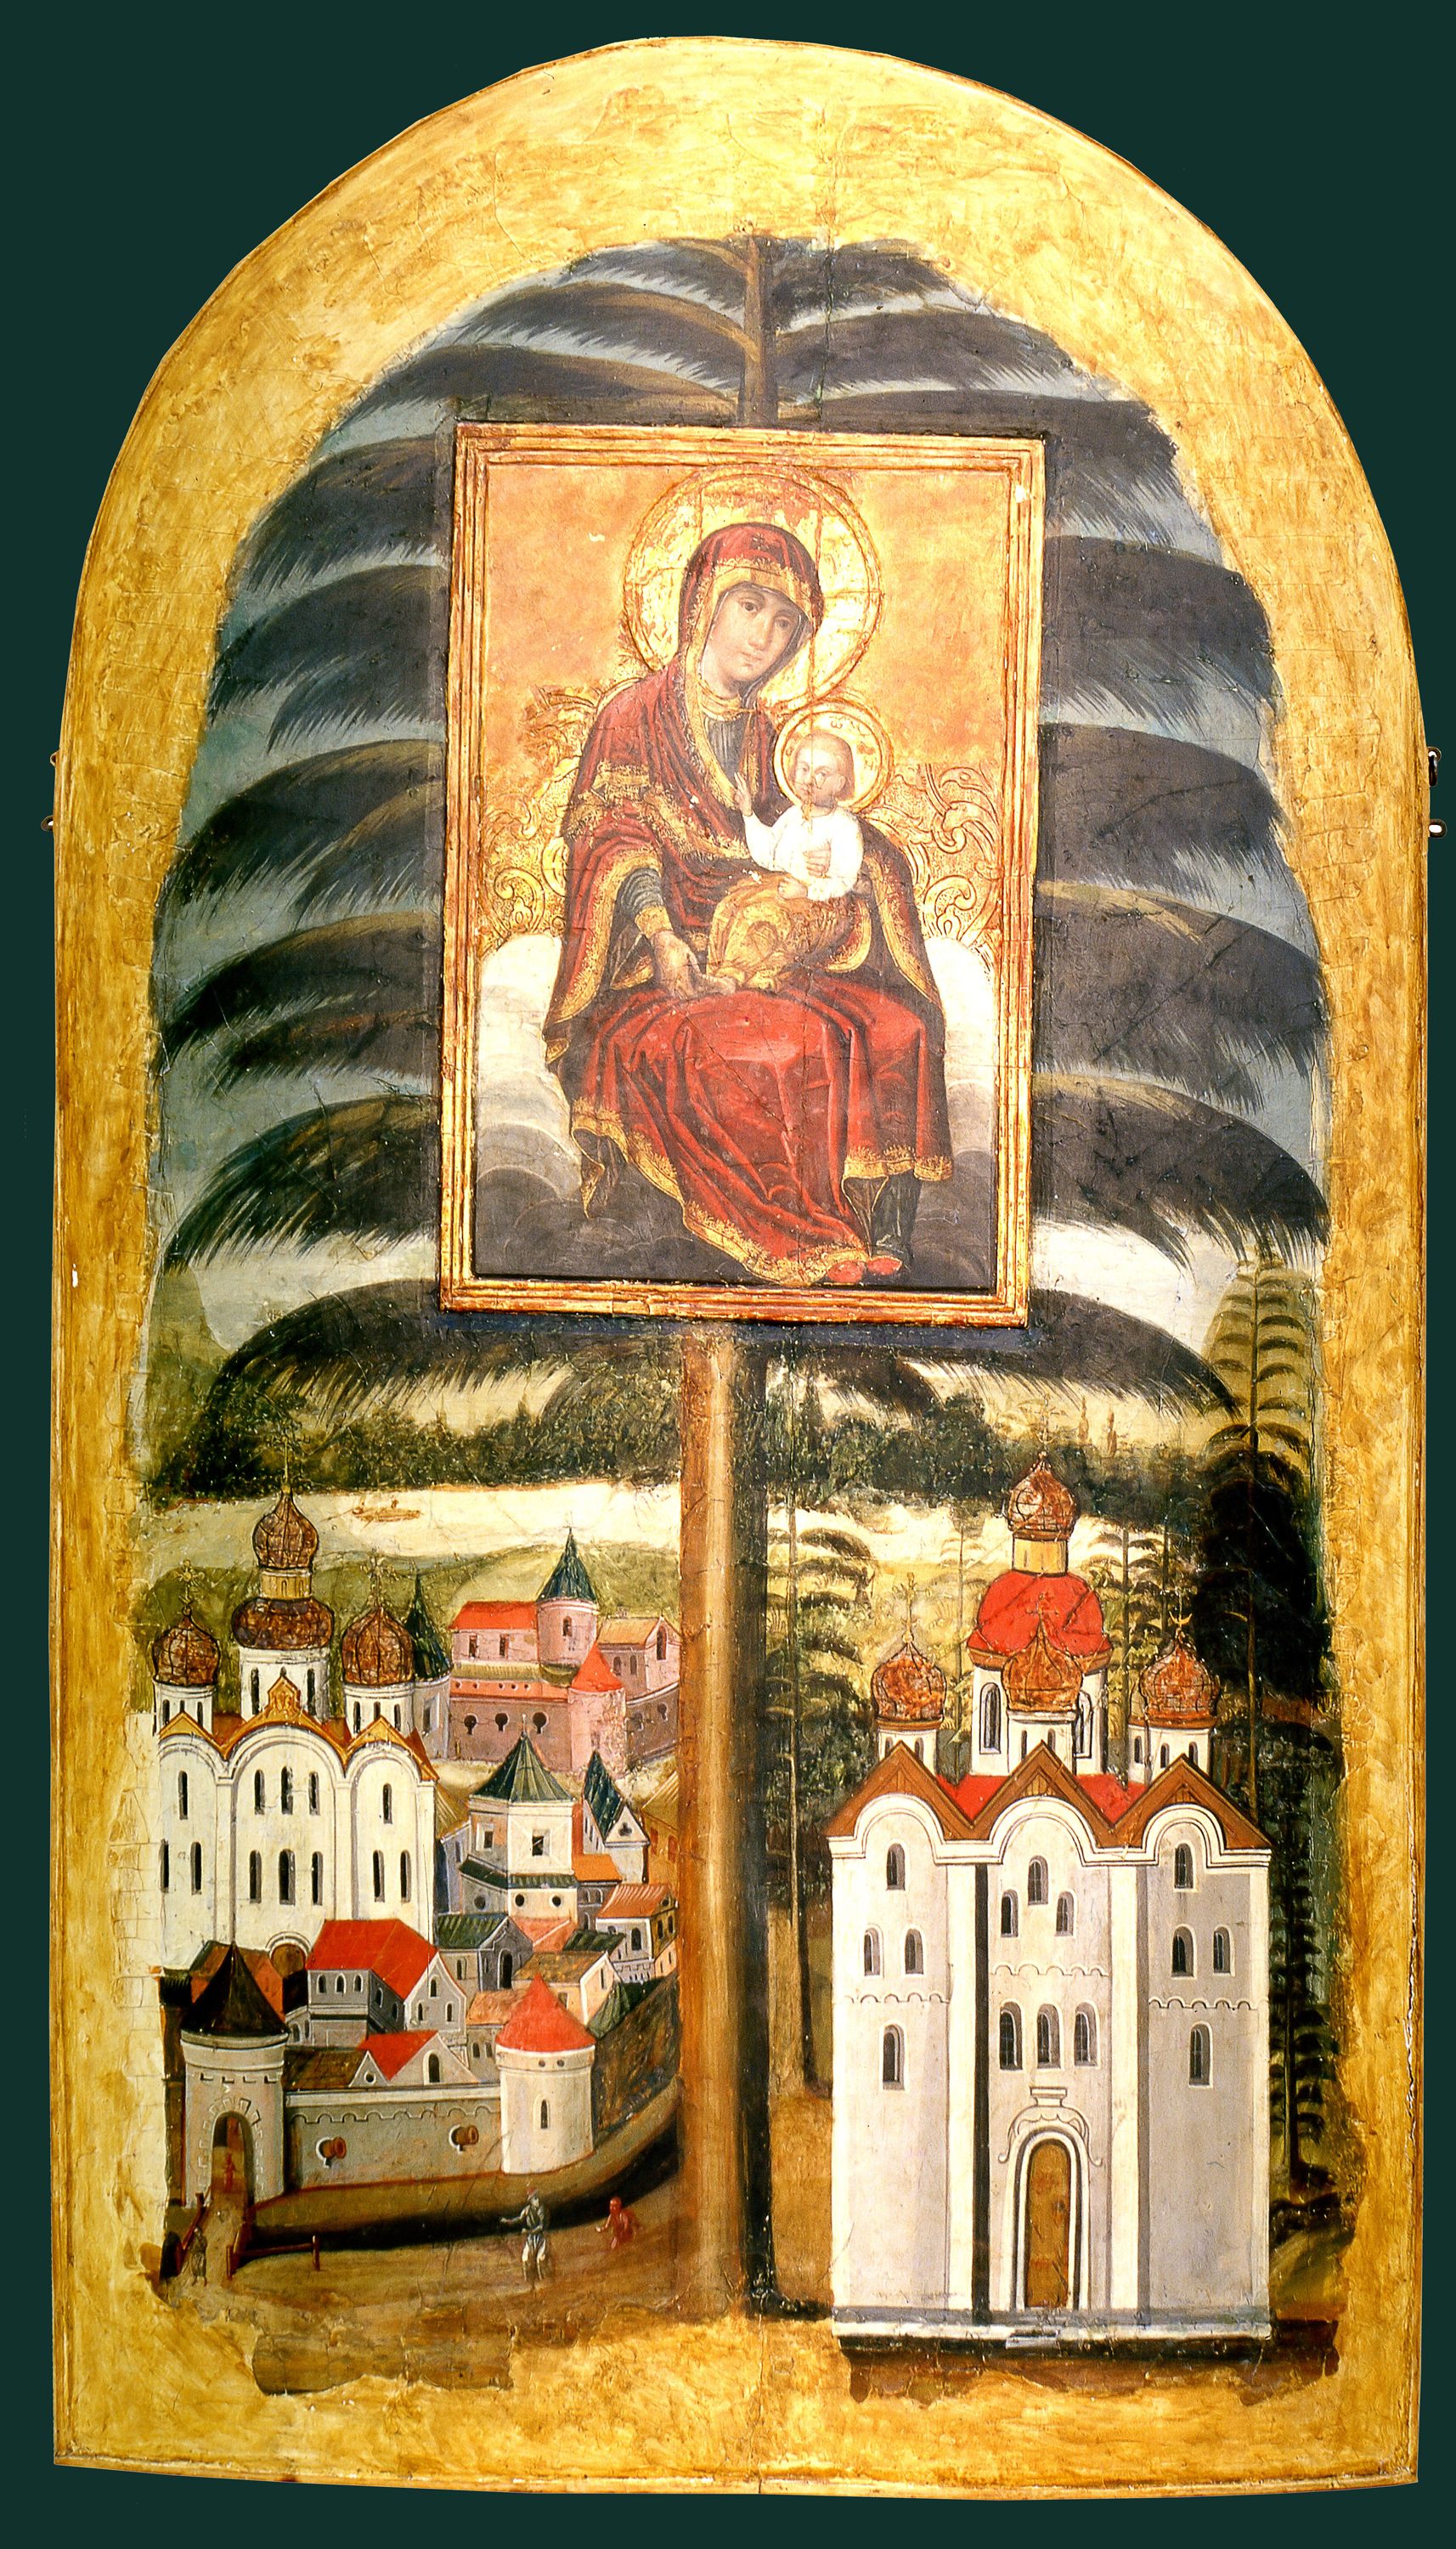 Єлецька ікона Богородиці в Чернігові: маловідомі факти й гіпотези - фото 101368